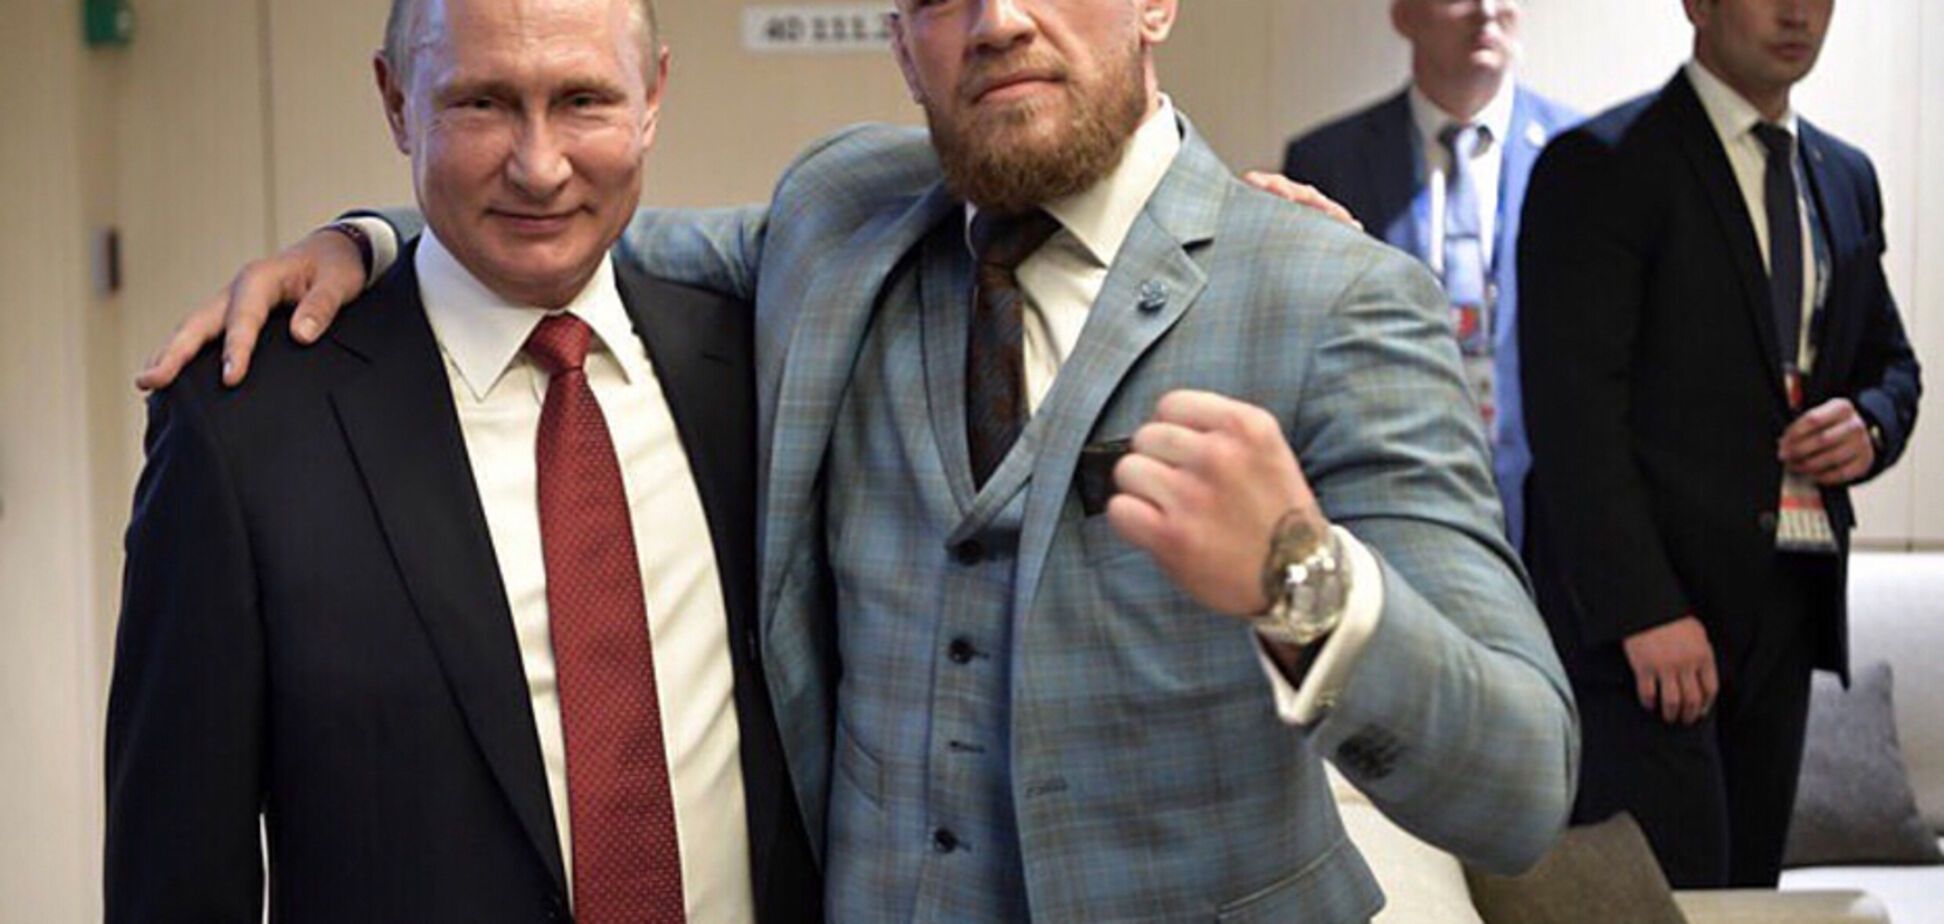 С прогибом: известный боец заискивал перед Путиным